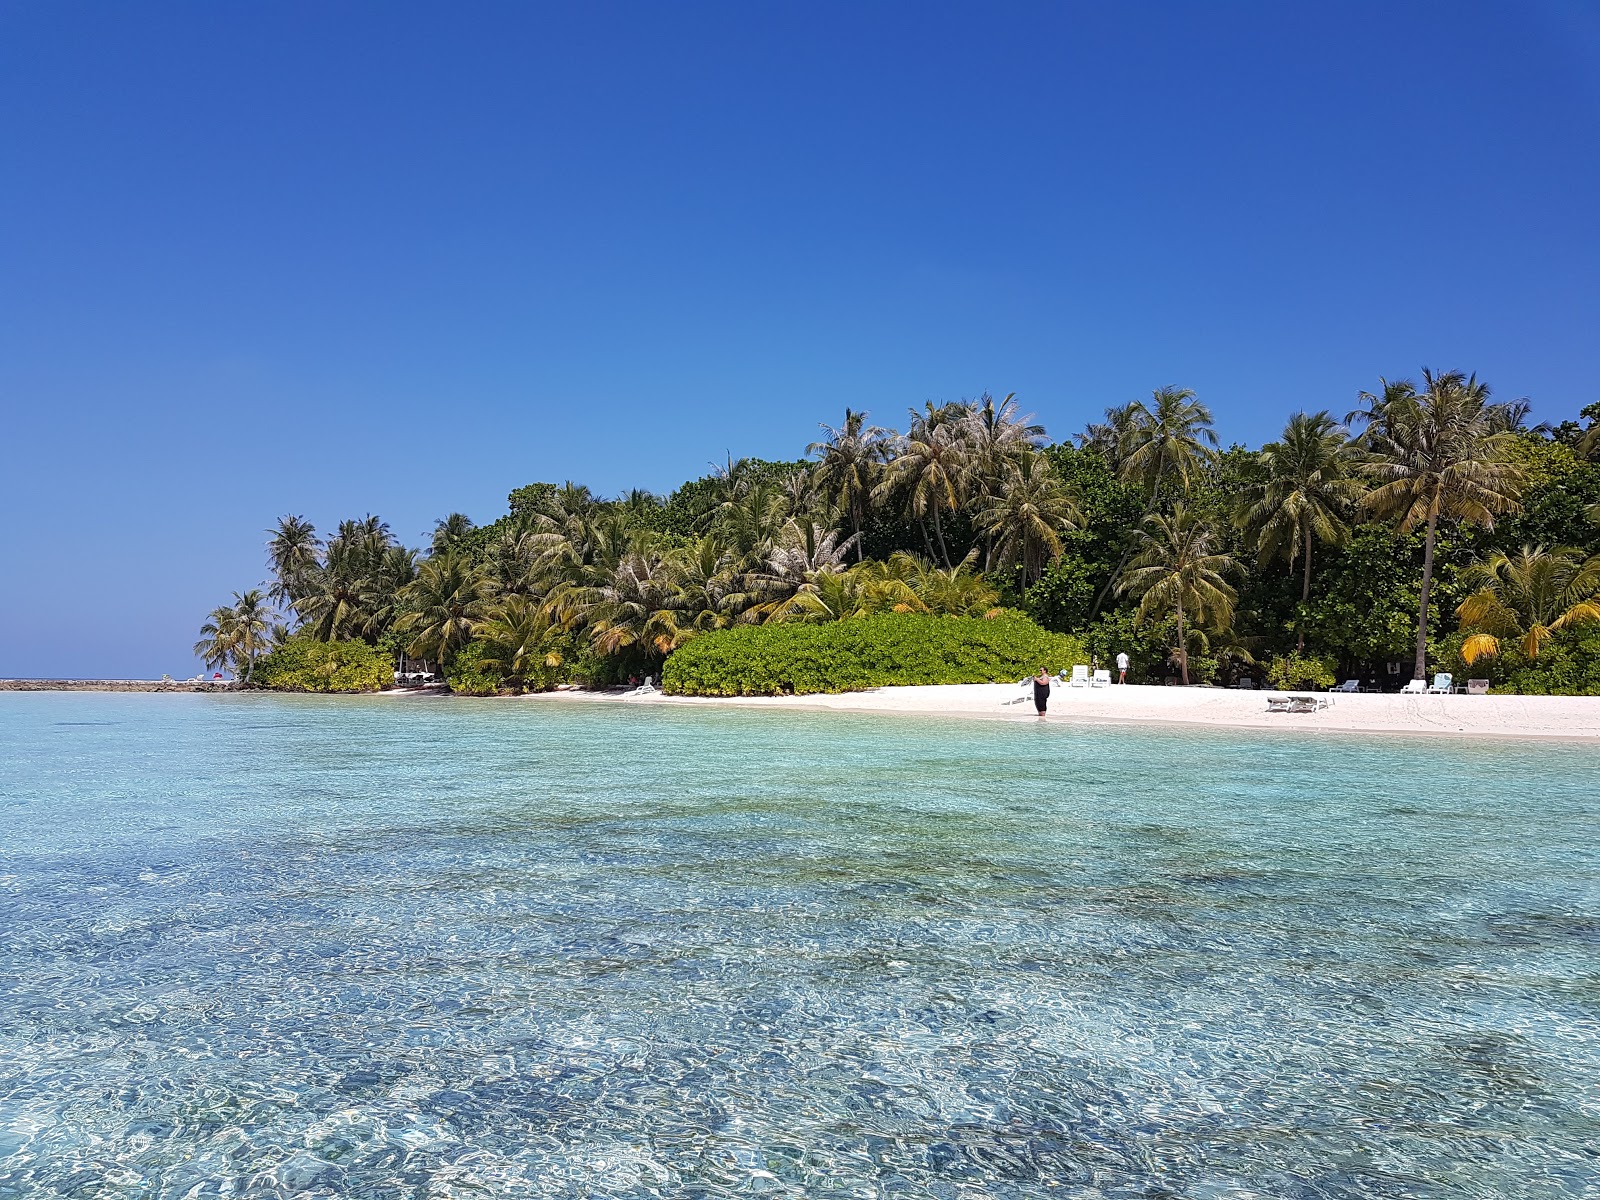 Biyadhoo Island Resort'in fotoğrafı beyaz kum yüzey ile